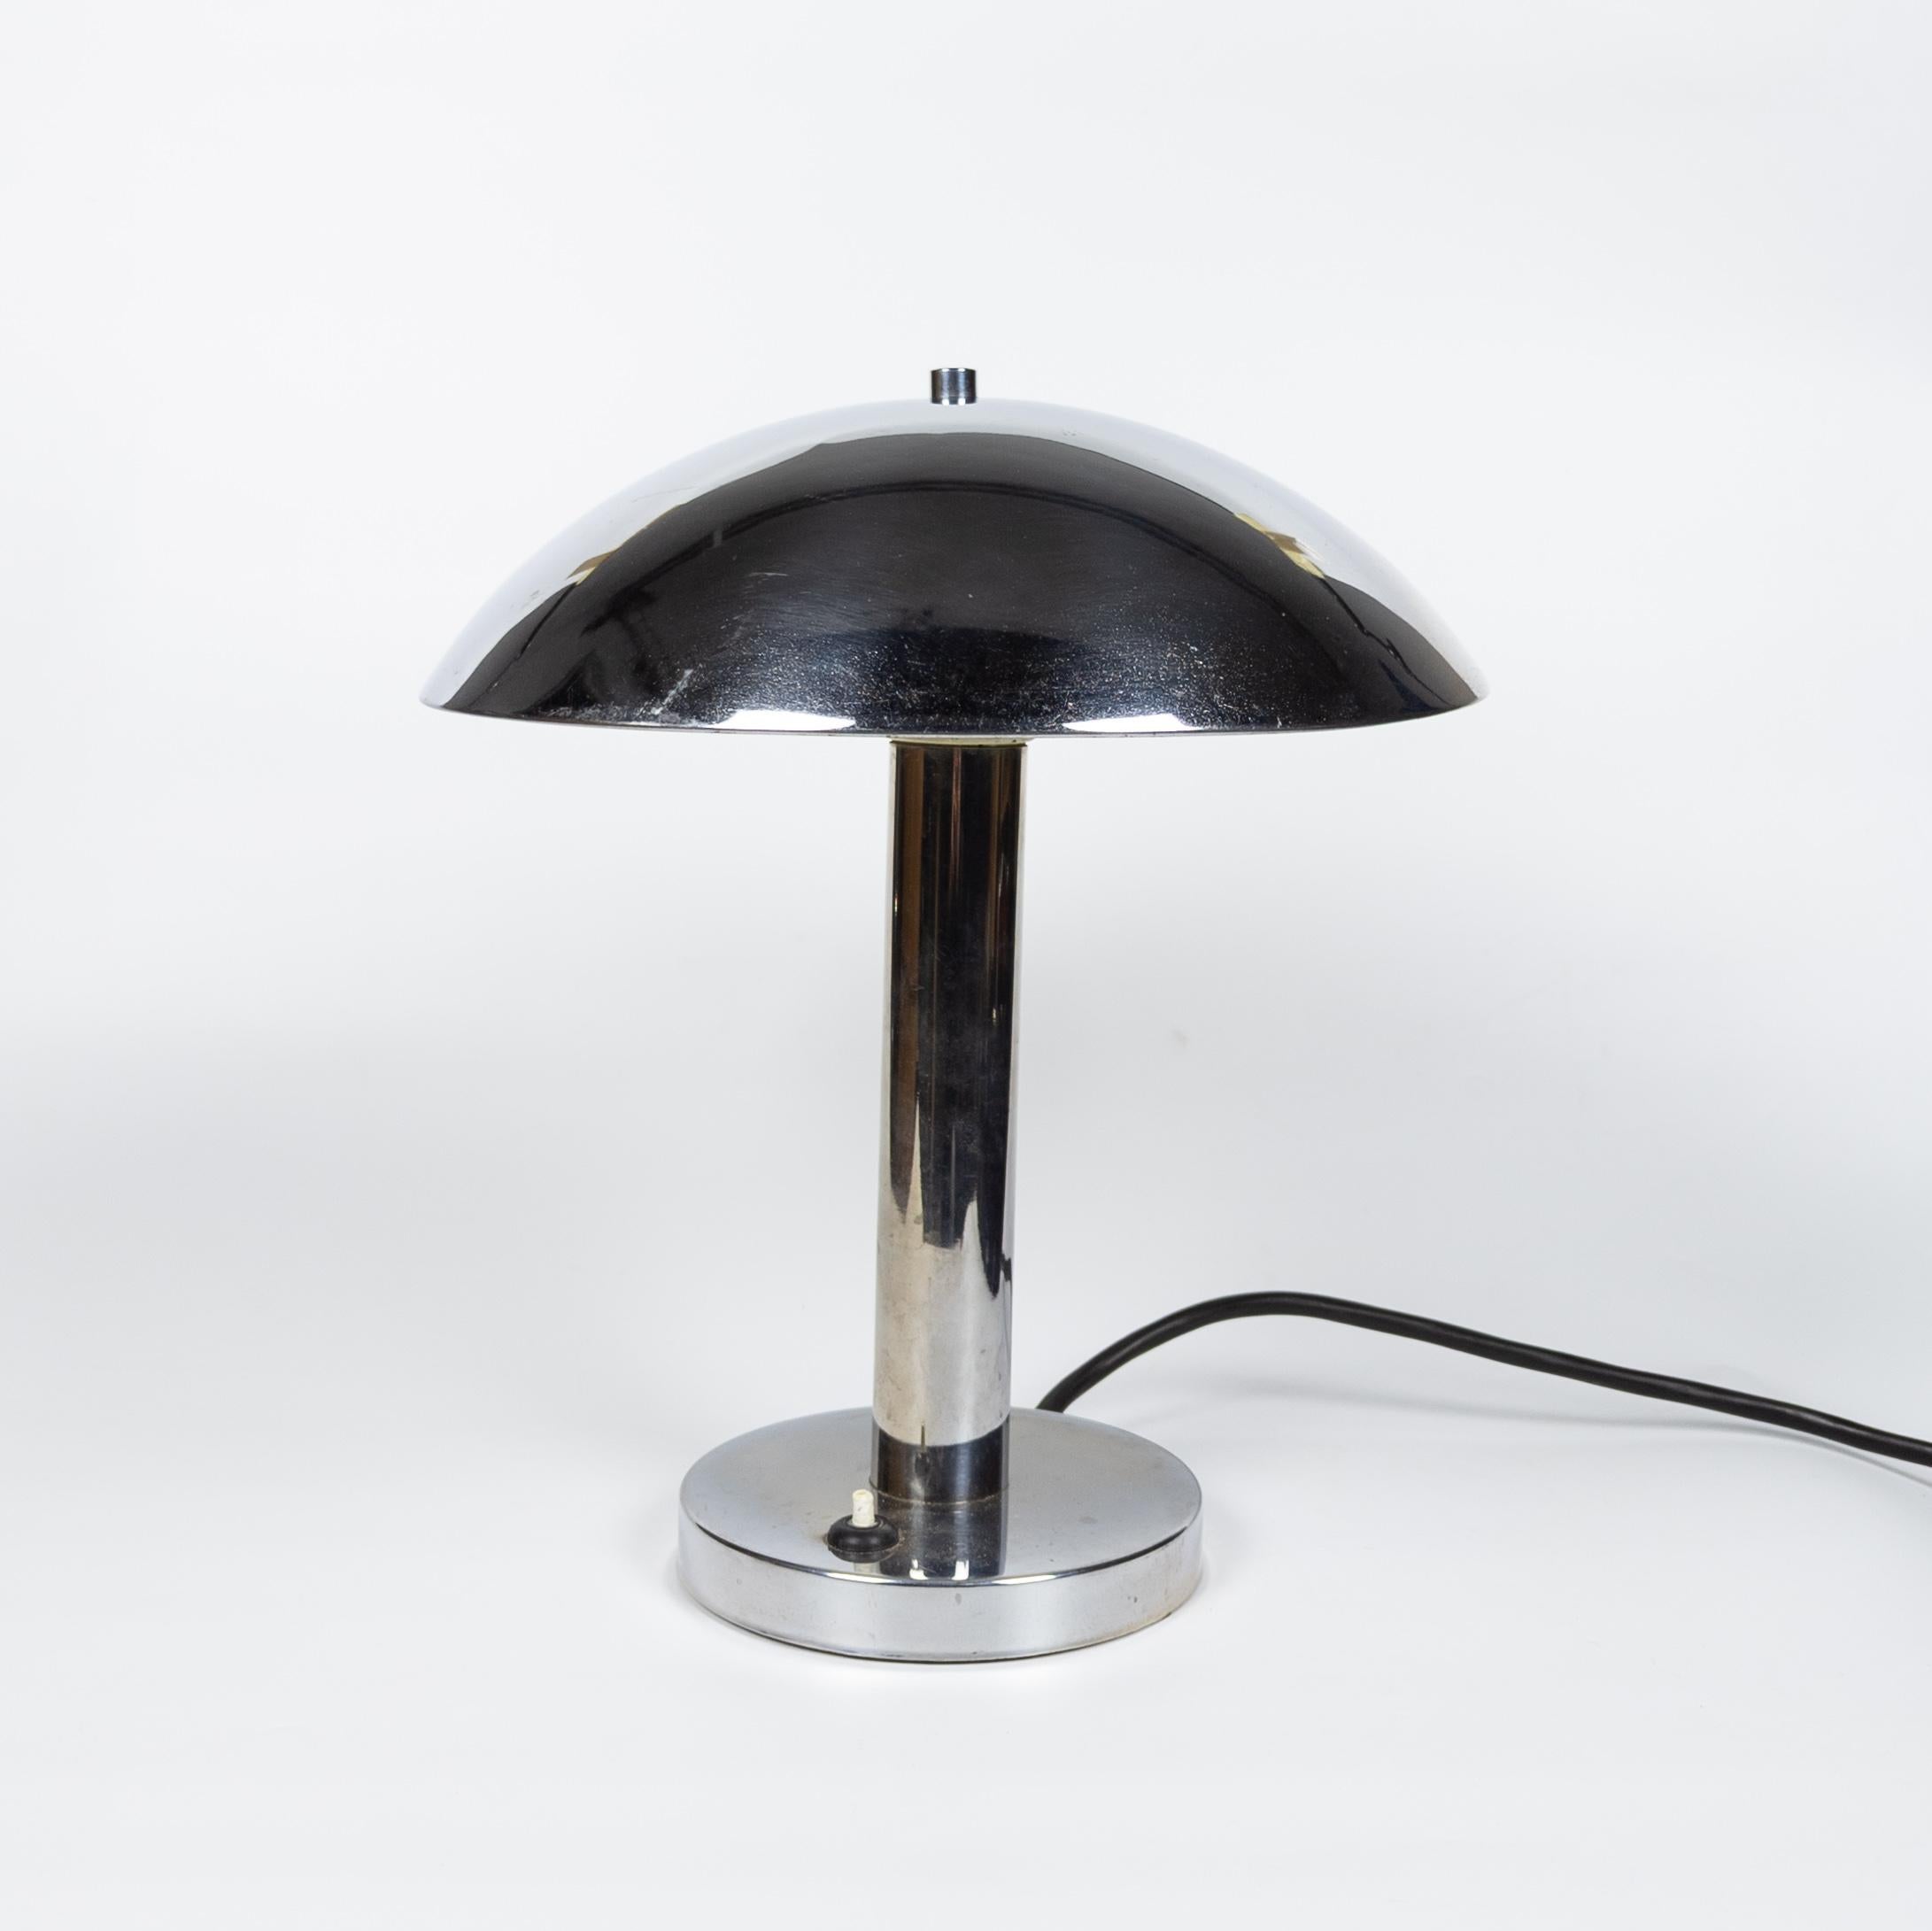 Lampe de table minimaliste chromée conçue par l'architecte tchèque Miroslav Prokop pour la société Napako, ancienne Tchécoslovaquie, dans les années 1930. Bel exemple de fonctionnalisme tchèque en excellent état d'origine. Entièrement opérationnel,